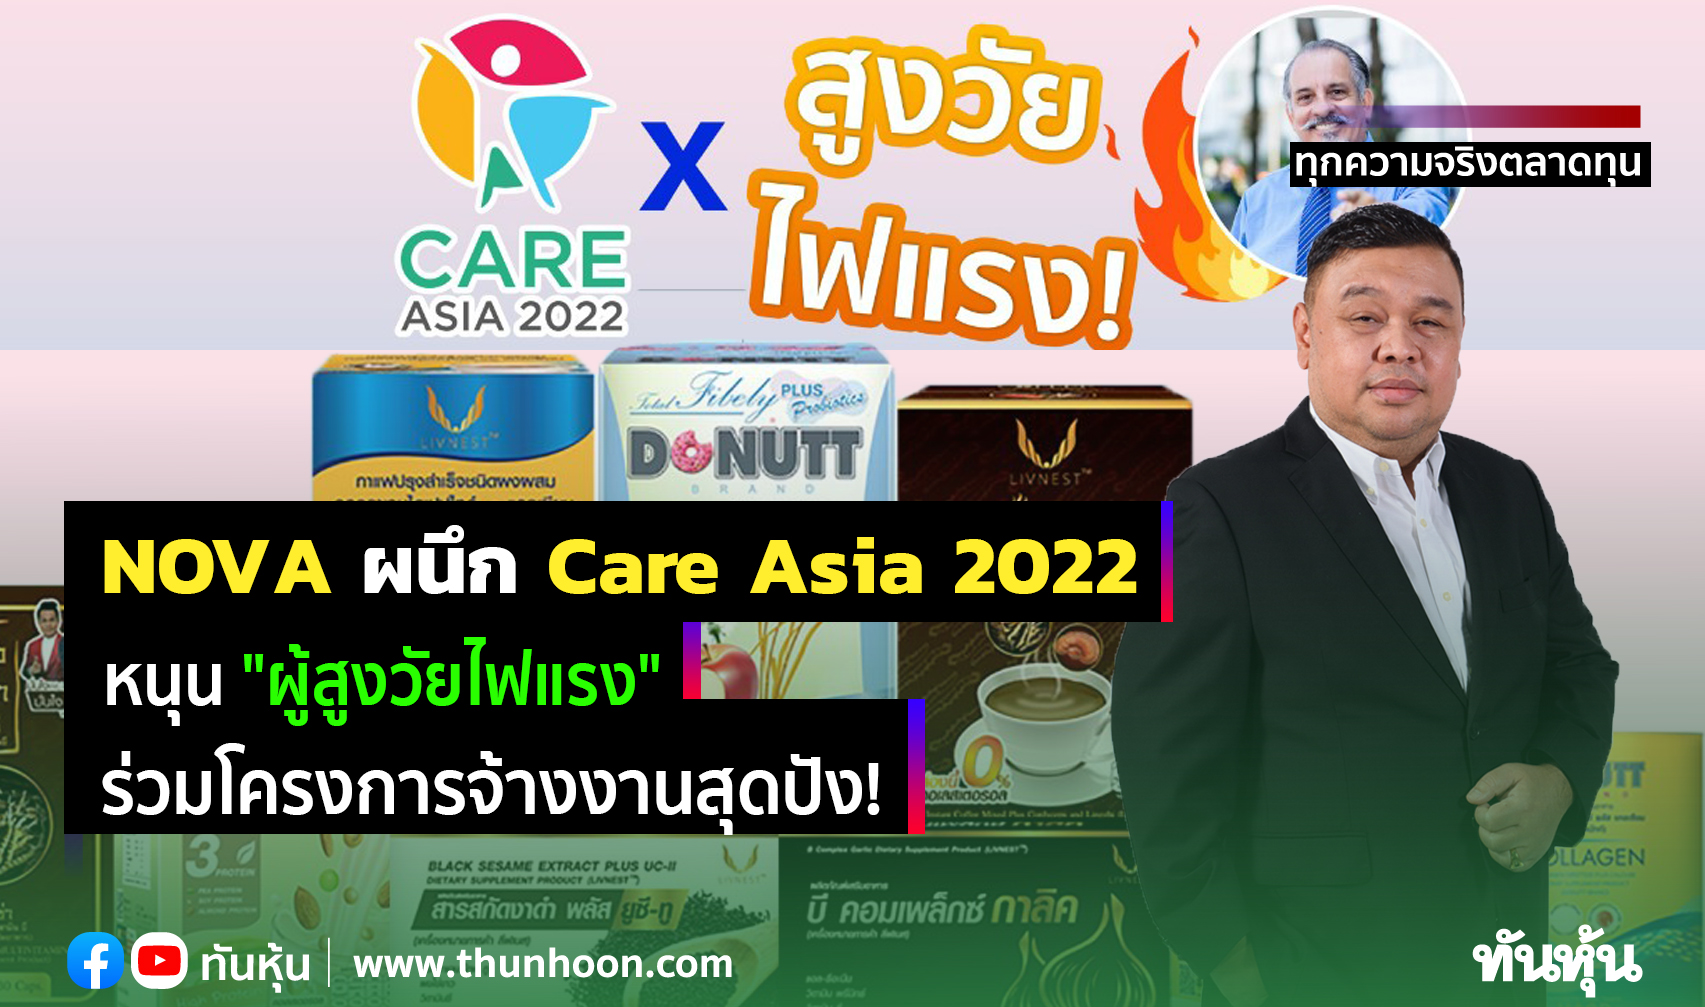 NOVA ผนึก Care Asia 2022 หนุน "ผู้สูงวัยไฟแรง" ร่วมโครงการจ้างงานสุดปัง!